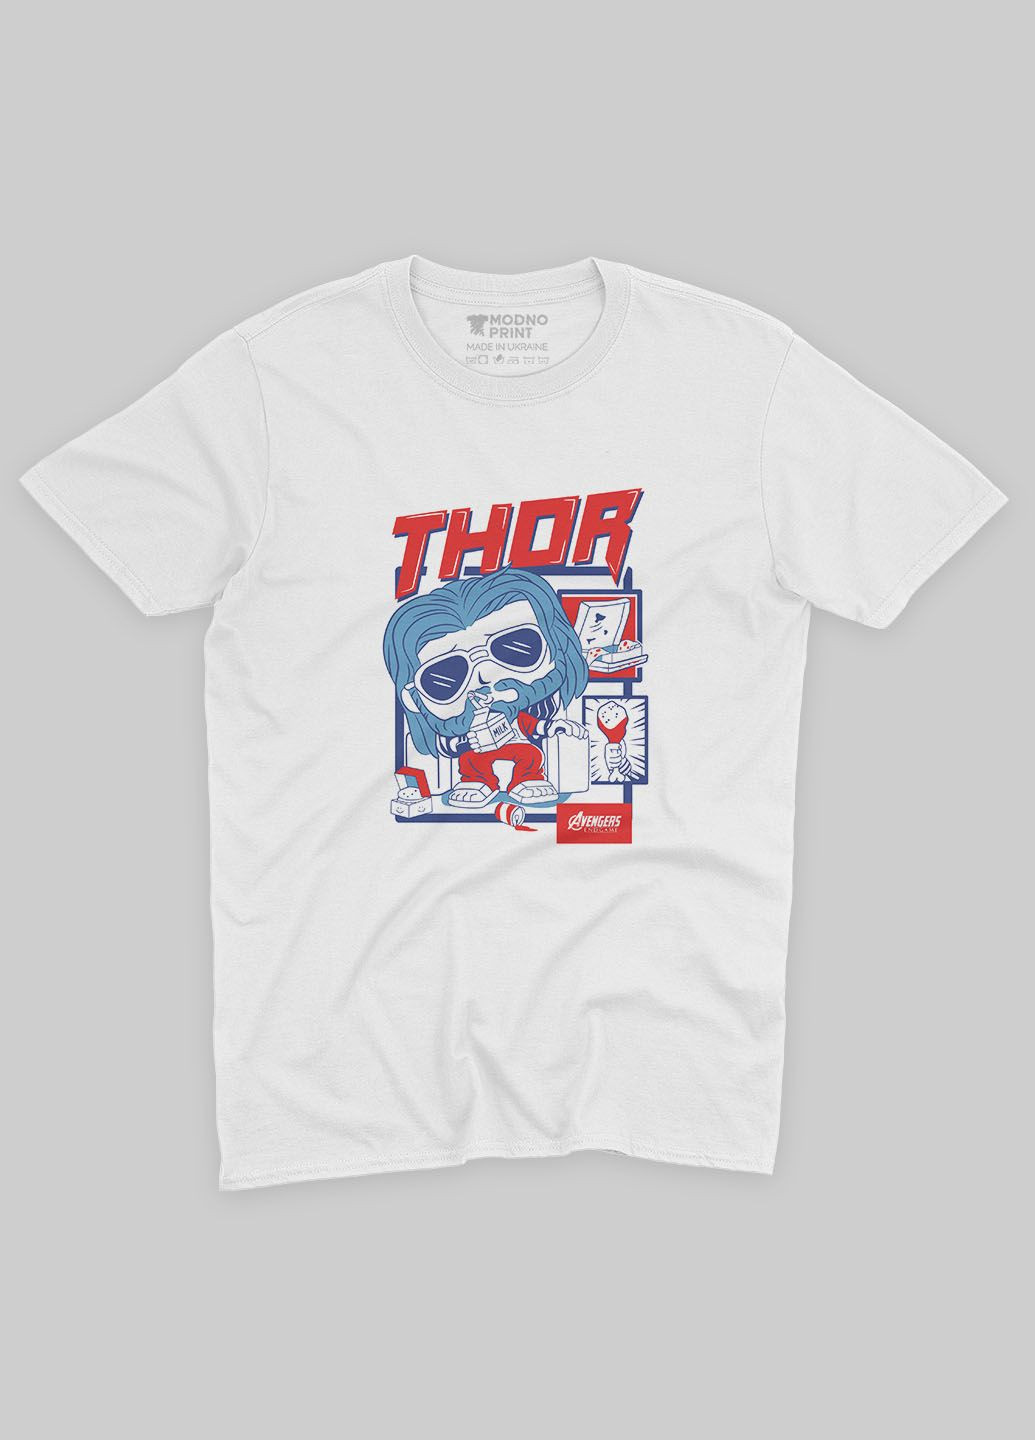 Біла демісезонна футболка для хлопчика з принтом супергероя - тор (ts001-1-whi-006-024-002-b) Modno